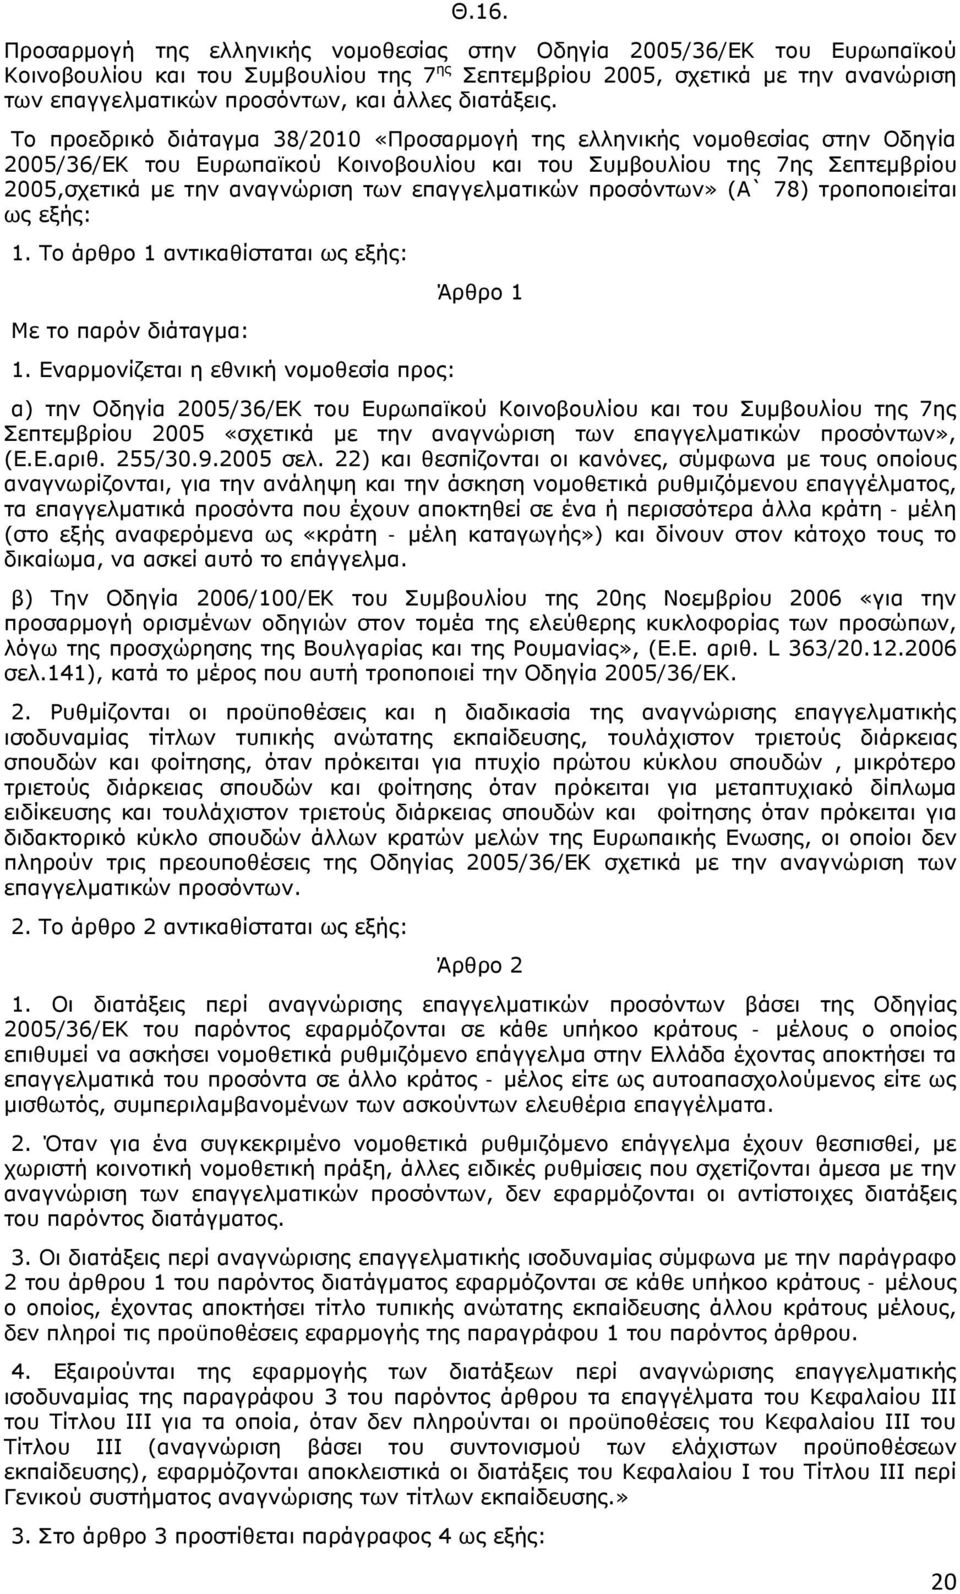 Το προεδρικό διάταγμα 38/2010 «Προσαρμογή της ελληνικής νομοθεσίας στην Οδηγία 2005/36/ΕΚ του Ευρωπαϊκού Κοινοβουλίου και του Συμβουλίου της 7ης Σεπτεμβρίου 2005,σχετικά με την αναγνώριση των